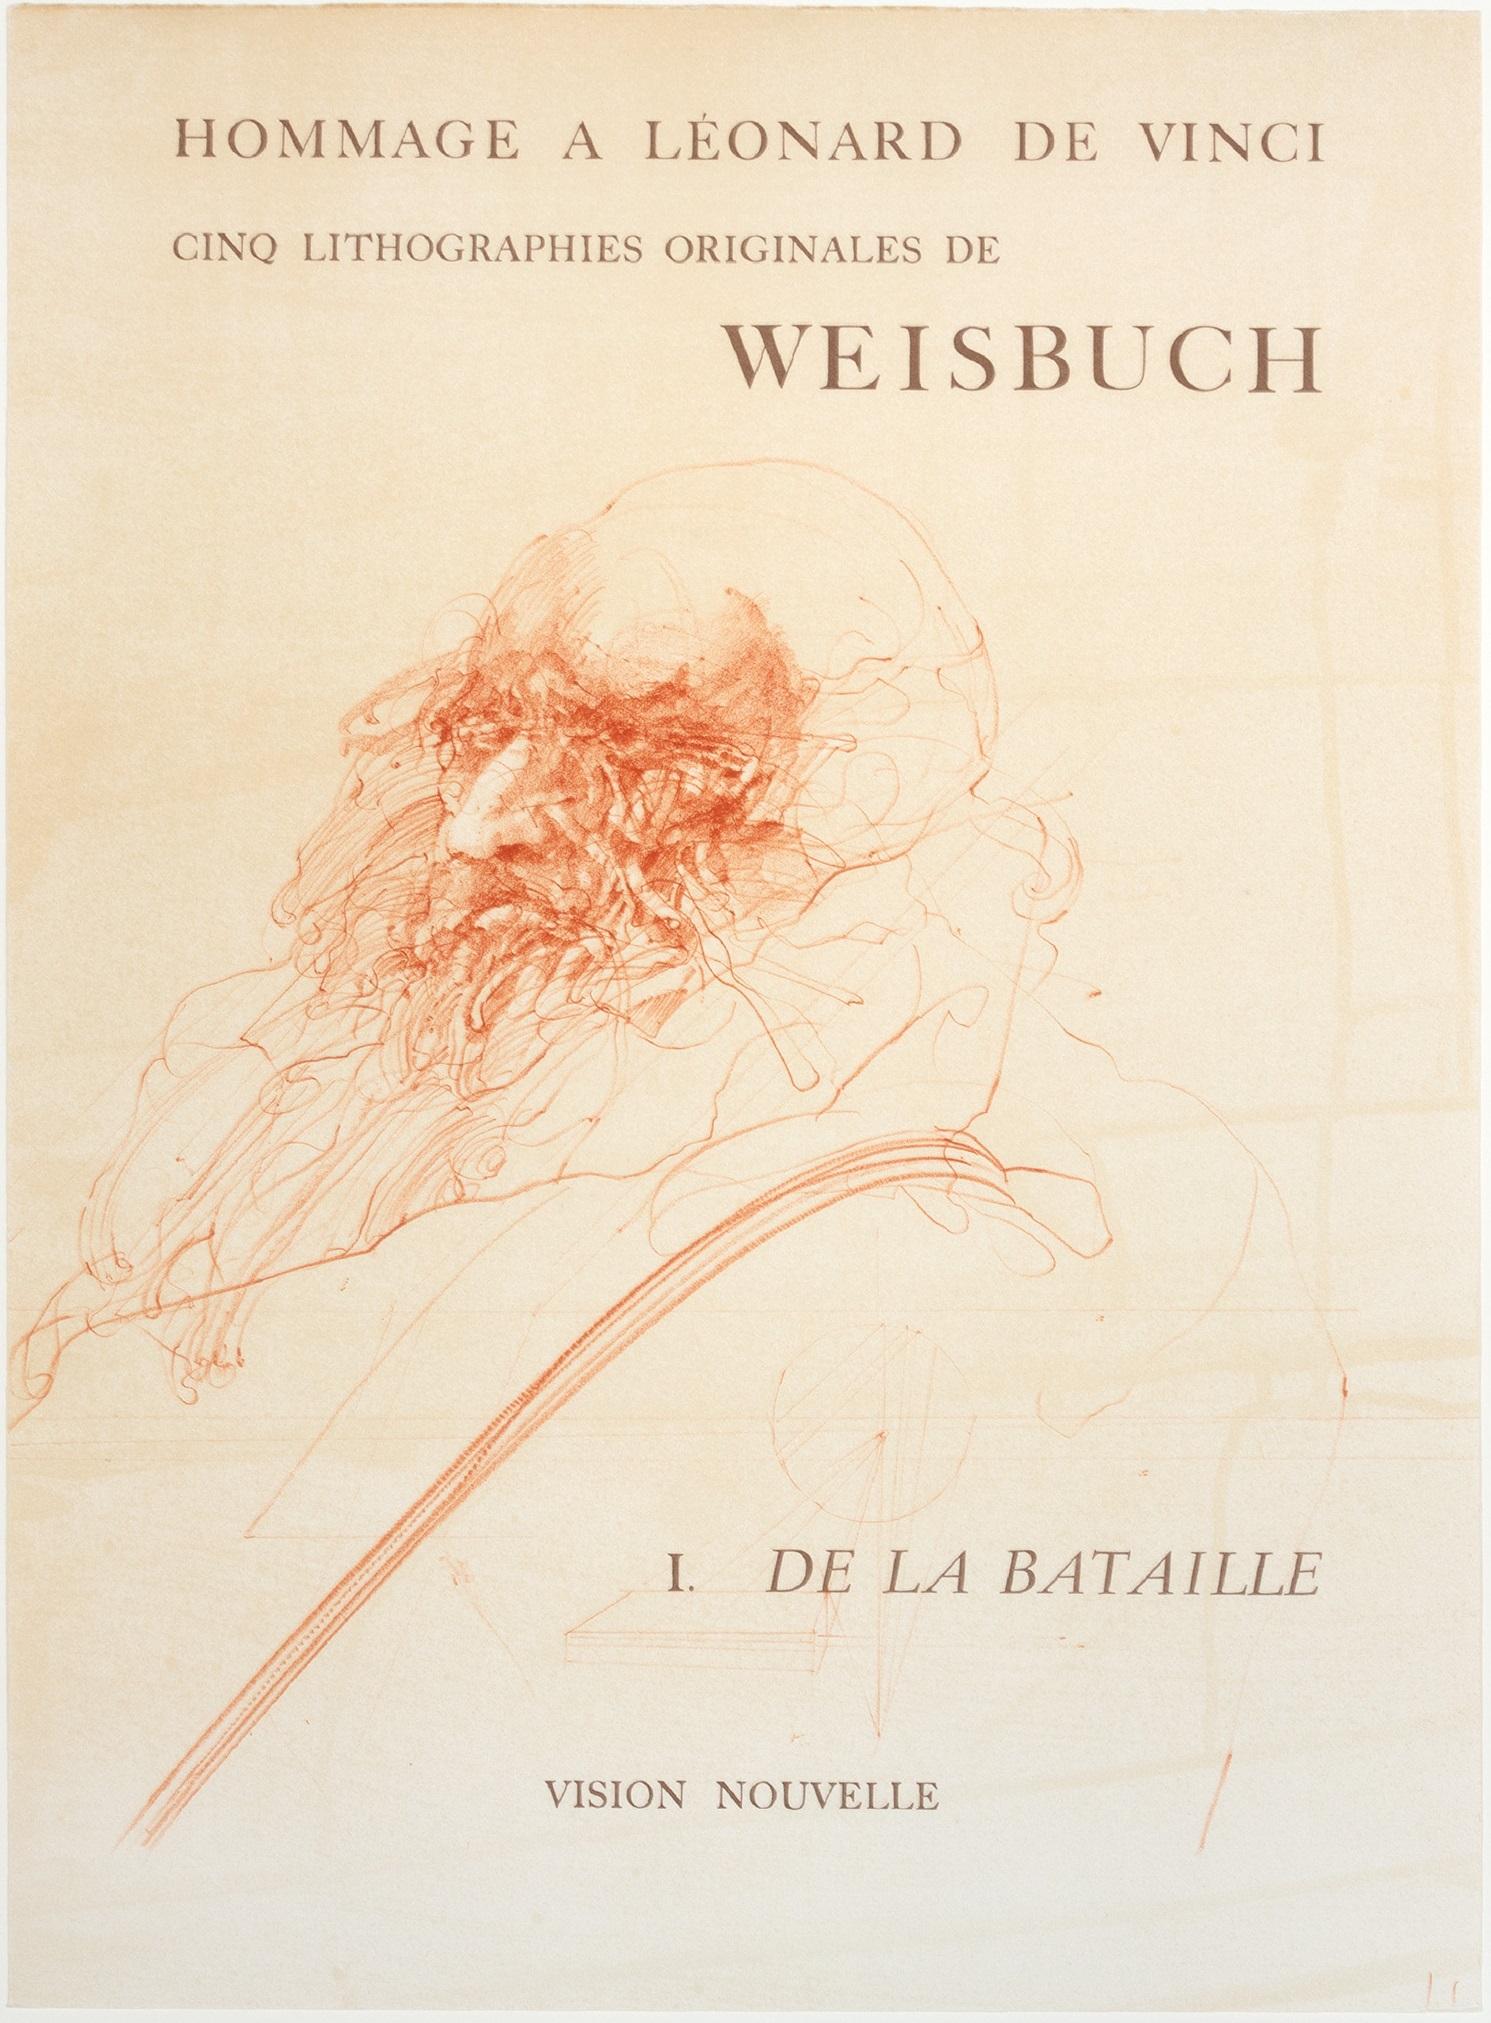 Dies ist eine originale Farblithographie von Claude Weisbuch. Er wurde entworfen, um seine Ausstellung in der französischen Galerie Vision Nouvelle zu bewerben. In dieser Sendung ging es insbesondere um seine Serie Hommage an Leonardo De